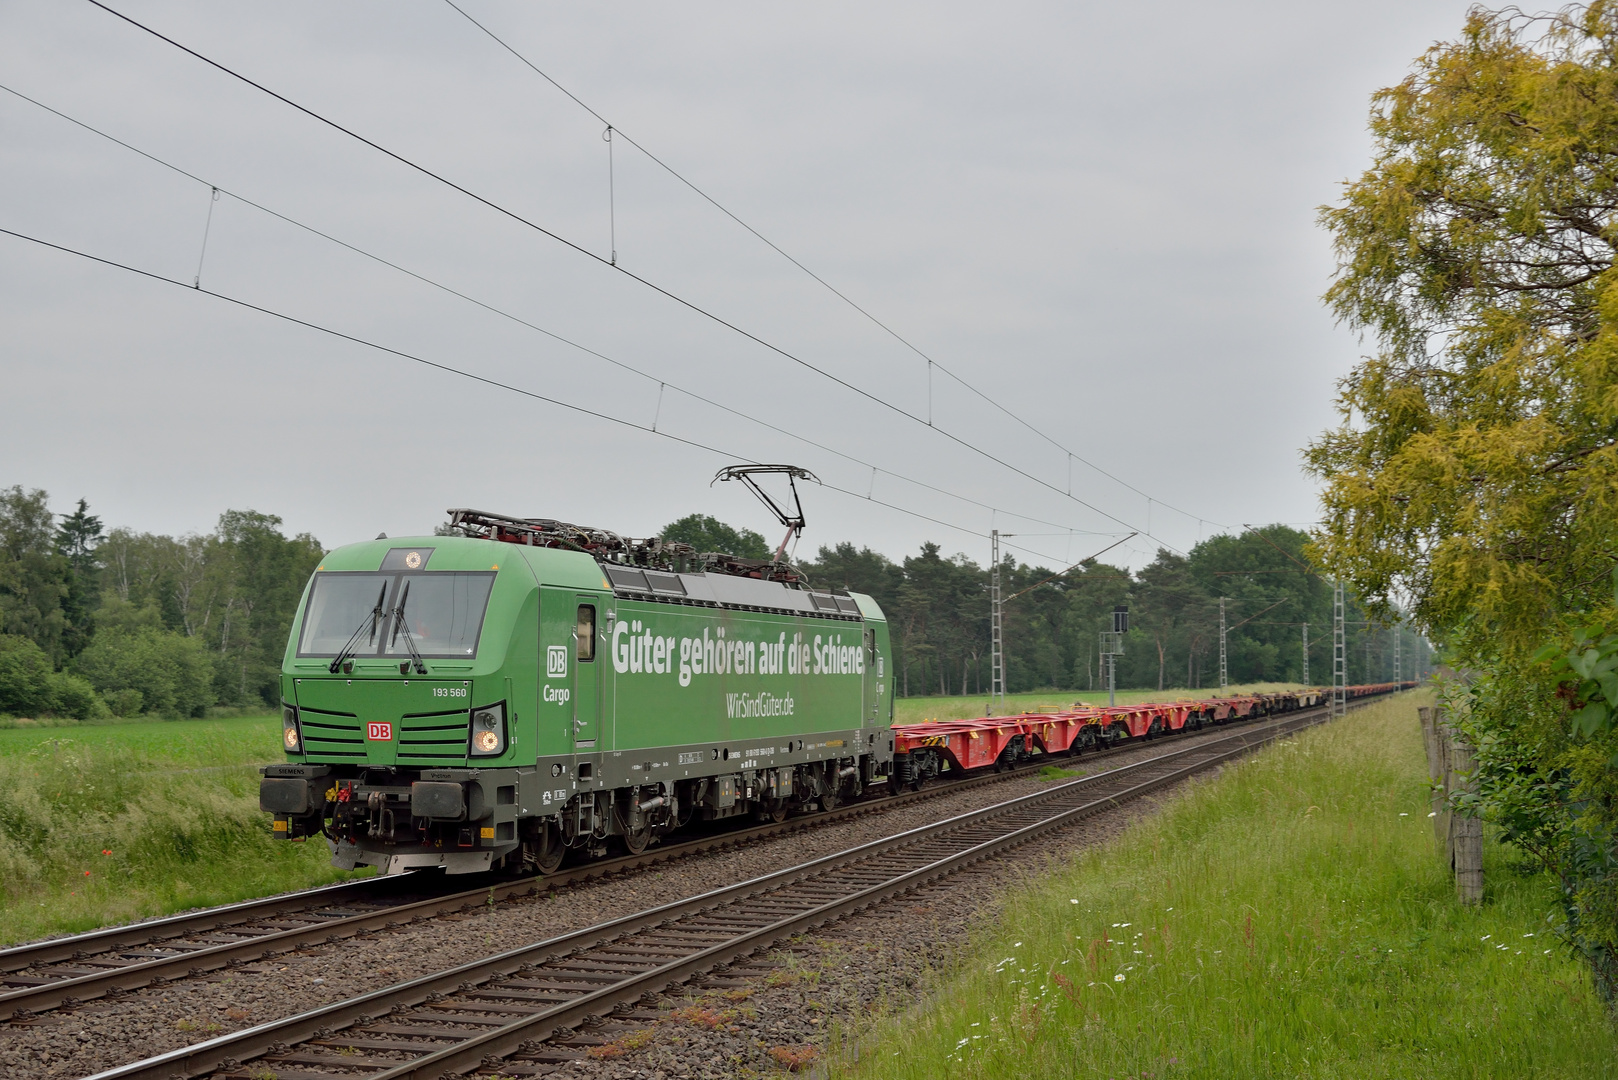 193 560 -- Güter gehören auf die Schiene-- am 07.06.21 in Hamm-Neustadt